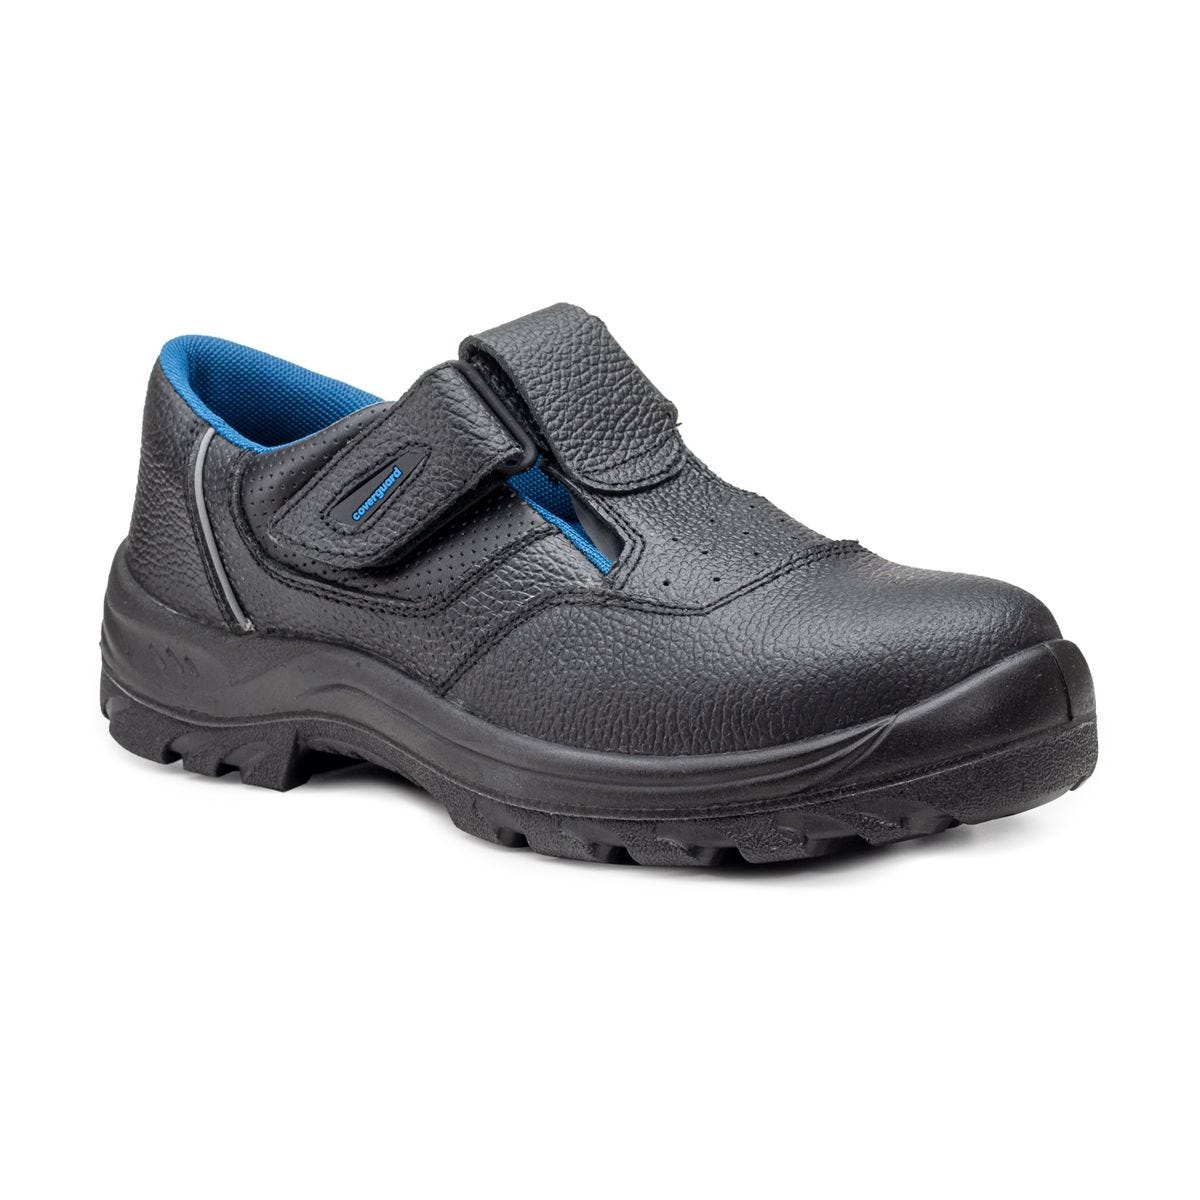 Sandales de sécurité basses Bosco II noir - Coverguard - Taille 48 0